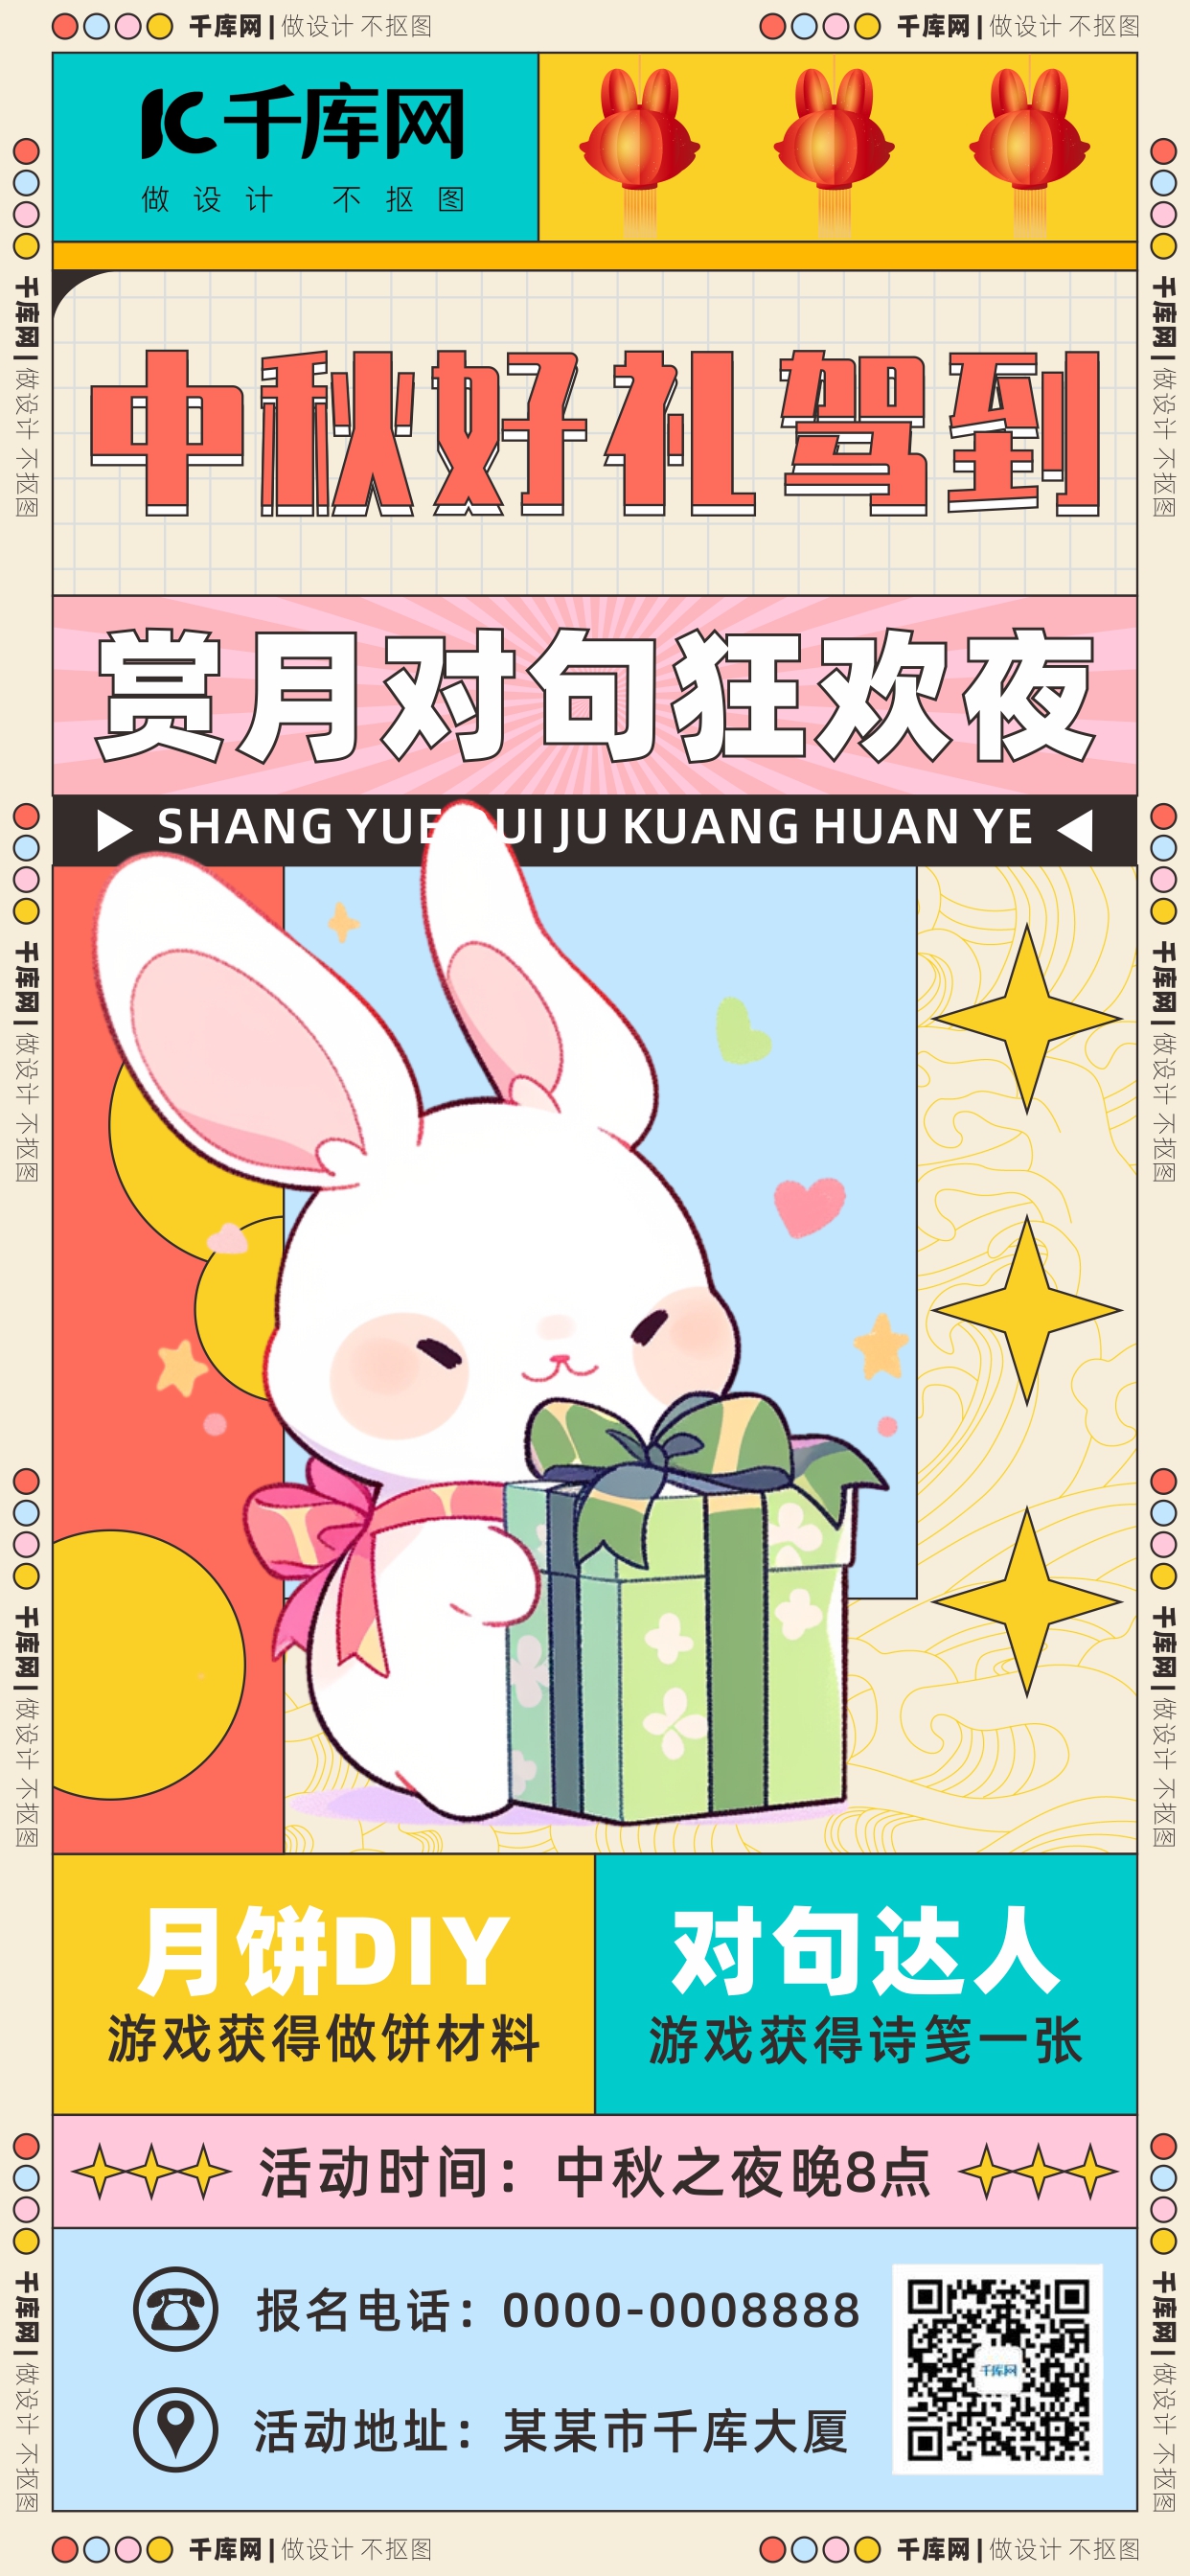 中秋节营销活动兔子彩色AI广告宣传海报图片